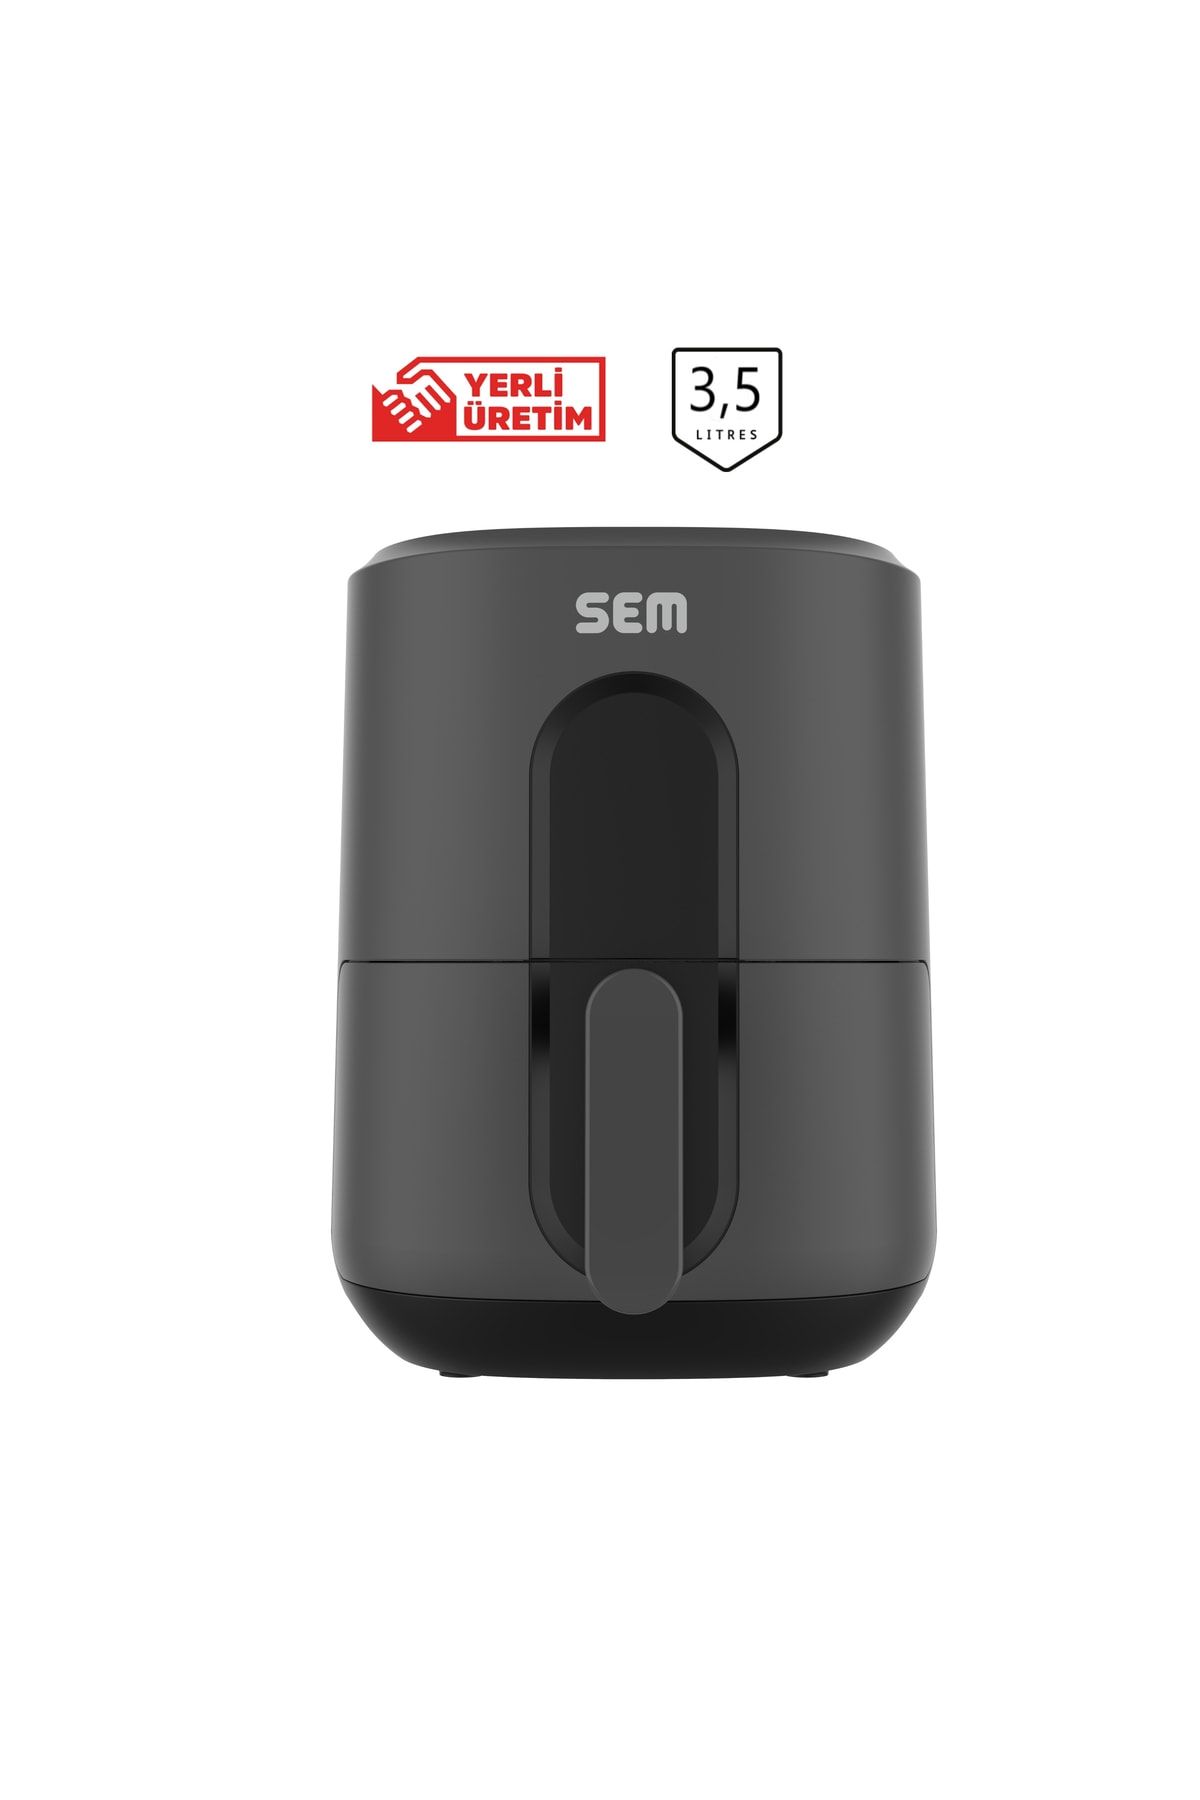 SEM Sc306 Smart Akıllı Dijital Midocook Yağsız Kızartma Sıcak Hava Fritöz Airfryer Hava Fritöz